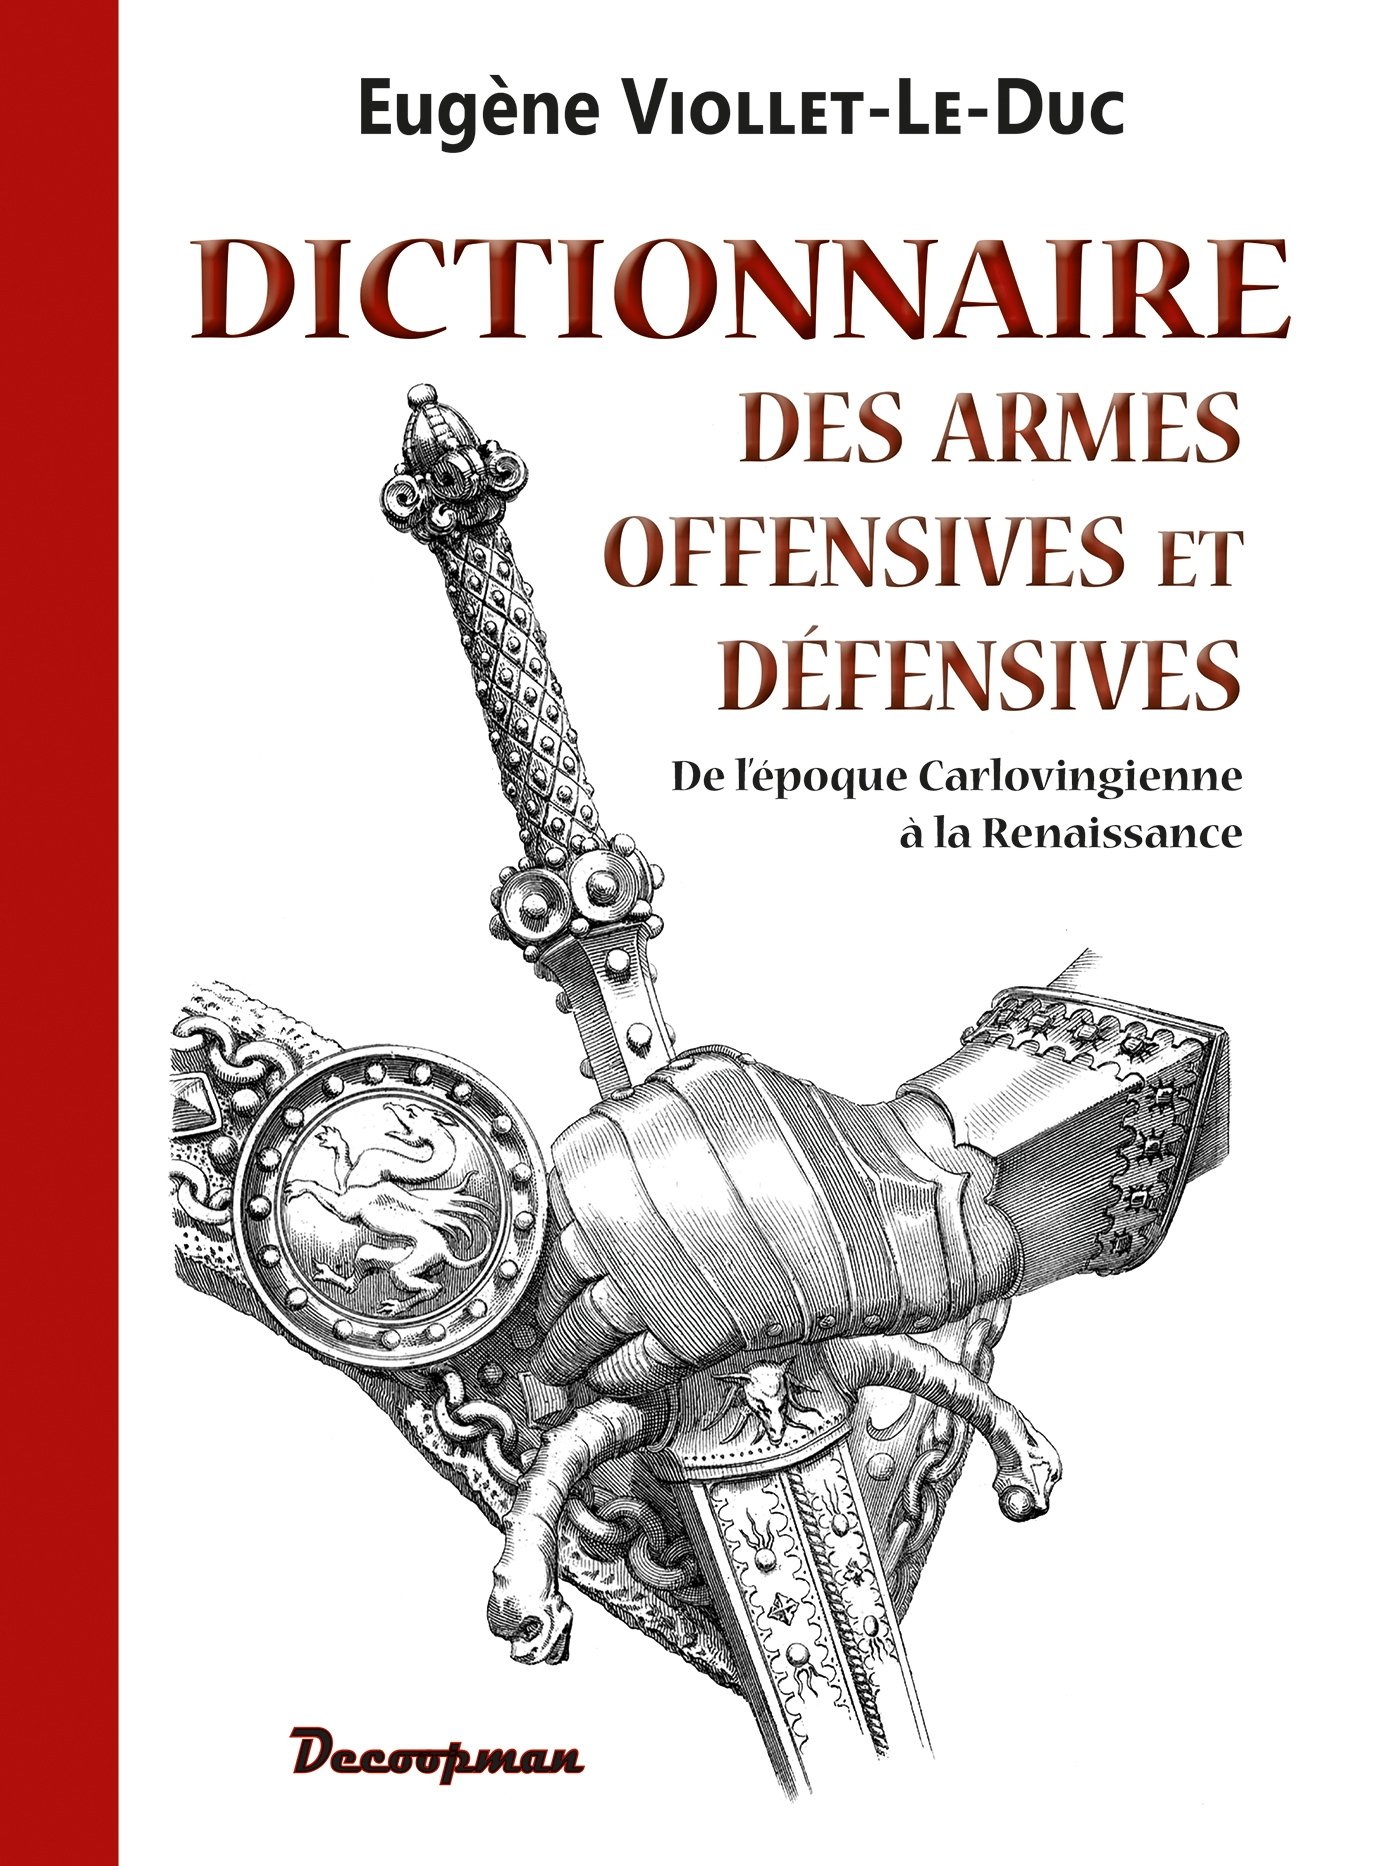 Dictionnaire des armes offensives et défensives, de l'époque Carlovingienne à la Renaissance, 2014, 700 p., 710 gravures. 